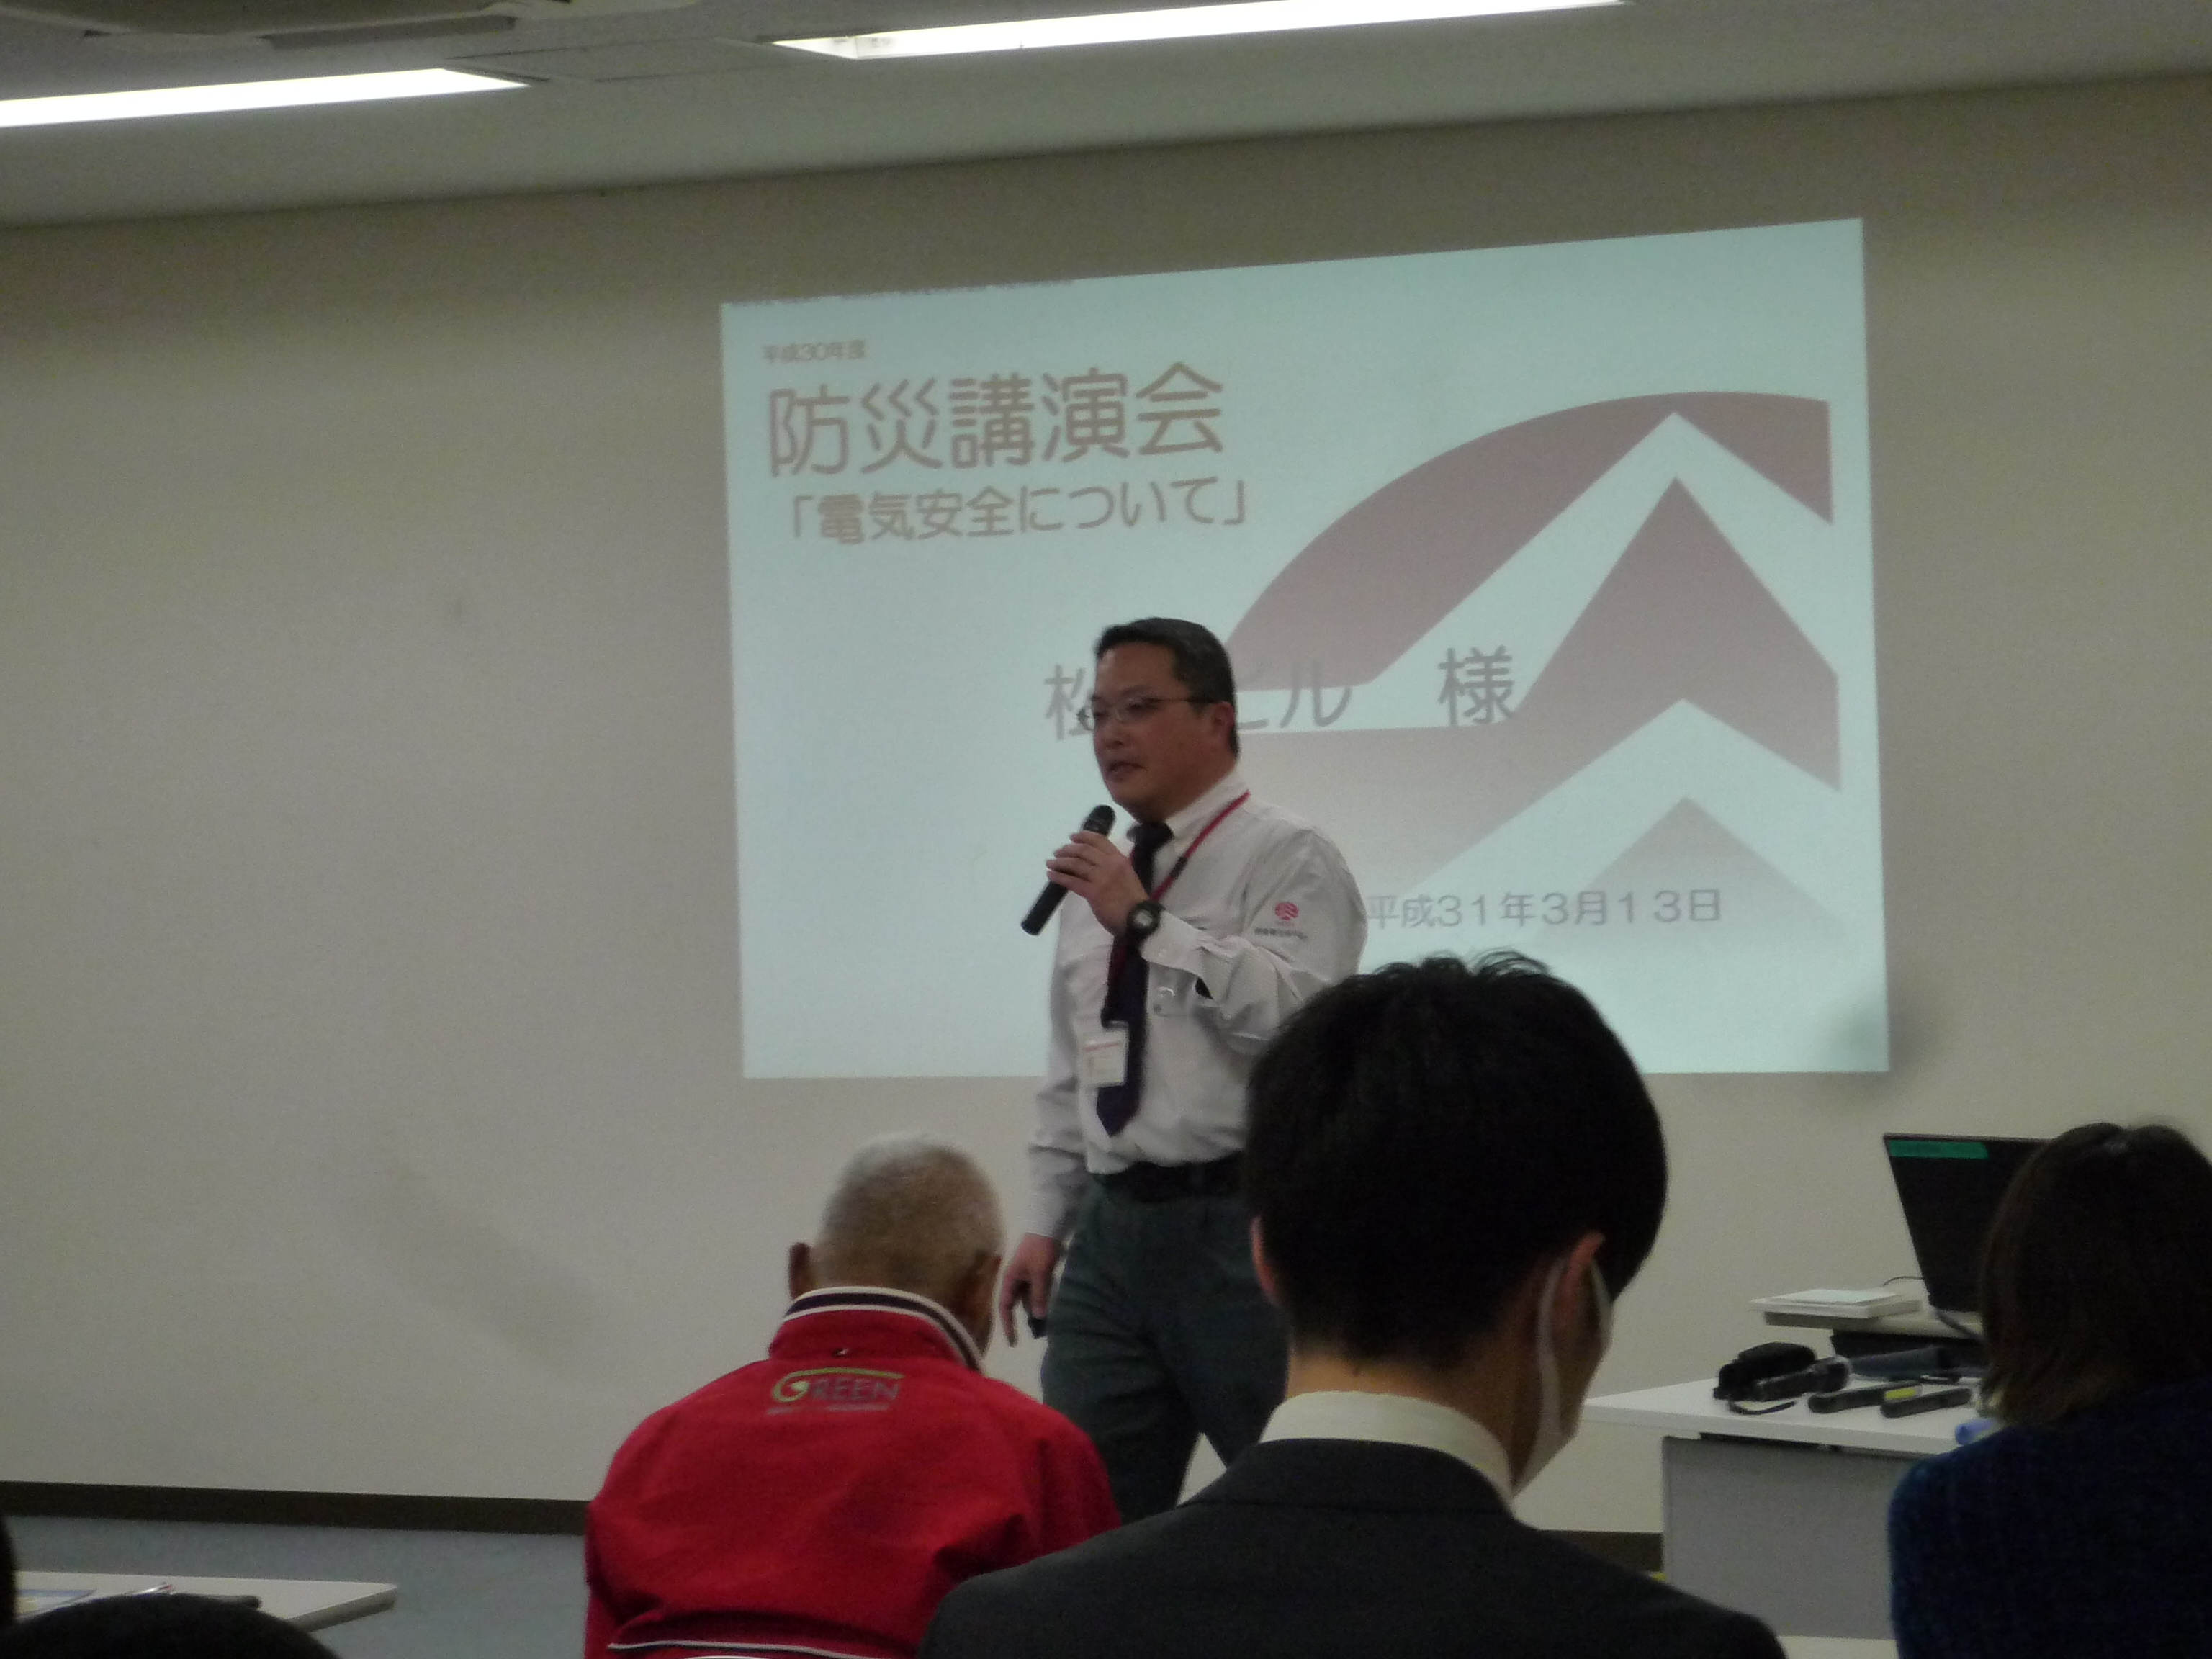 19年度 松村ビル防災講演会が開催されました 松村株式会社